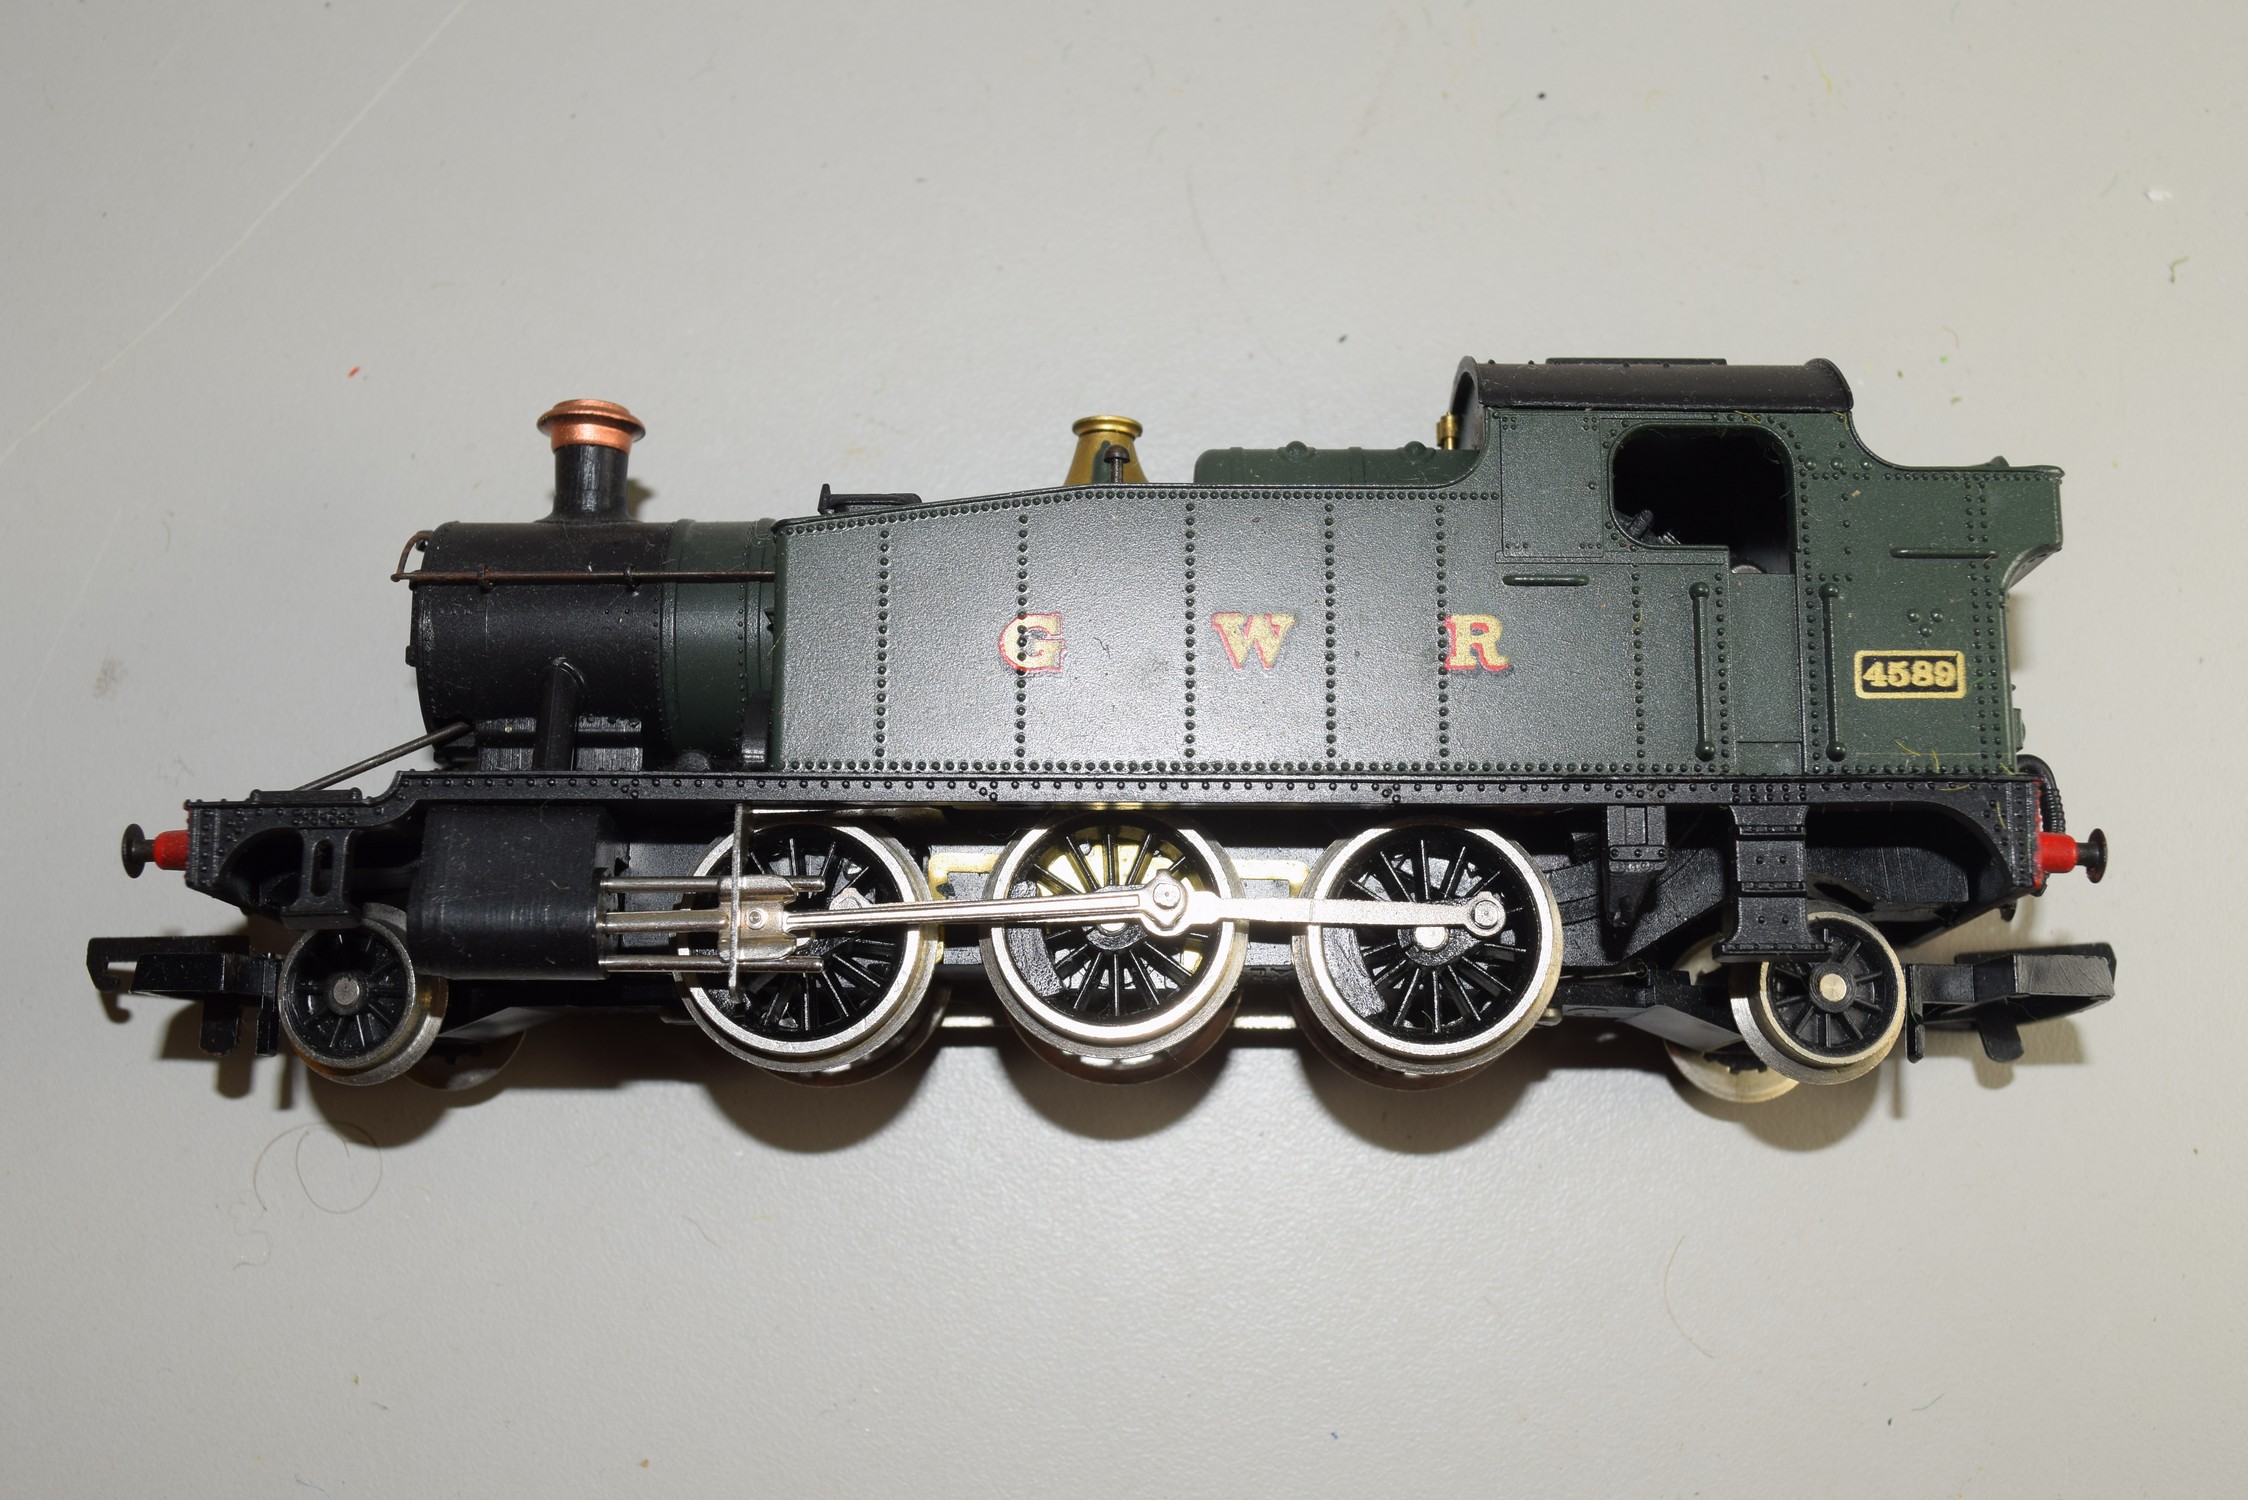 Unboxed 00 gauge Lima GWR locomotive no 4589 (missing tender)